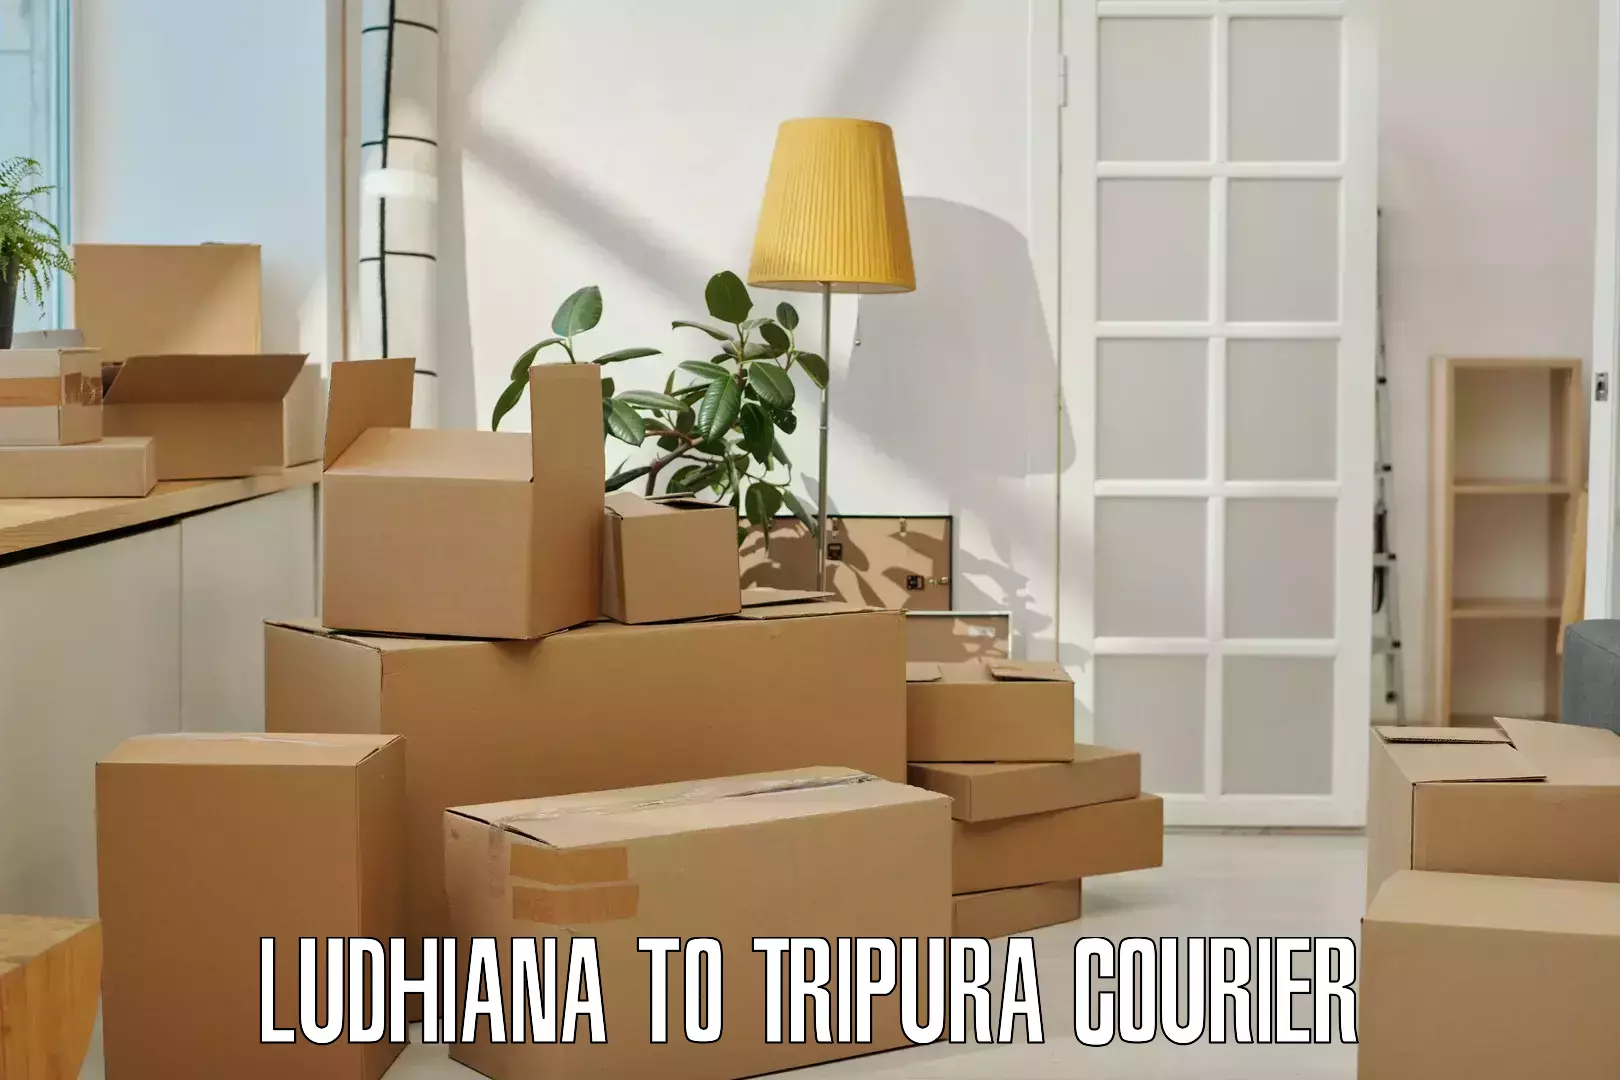 Courier service comparison Ludhiana to NIT Agartala